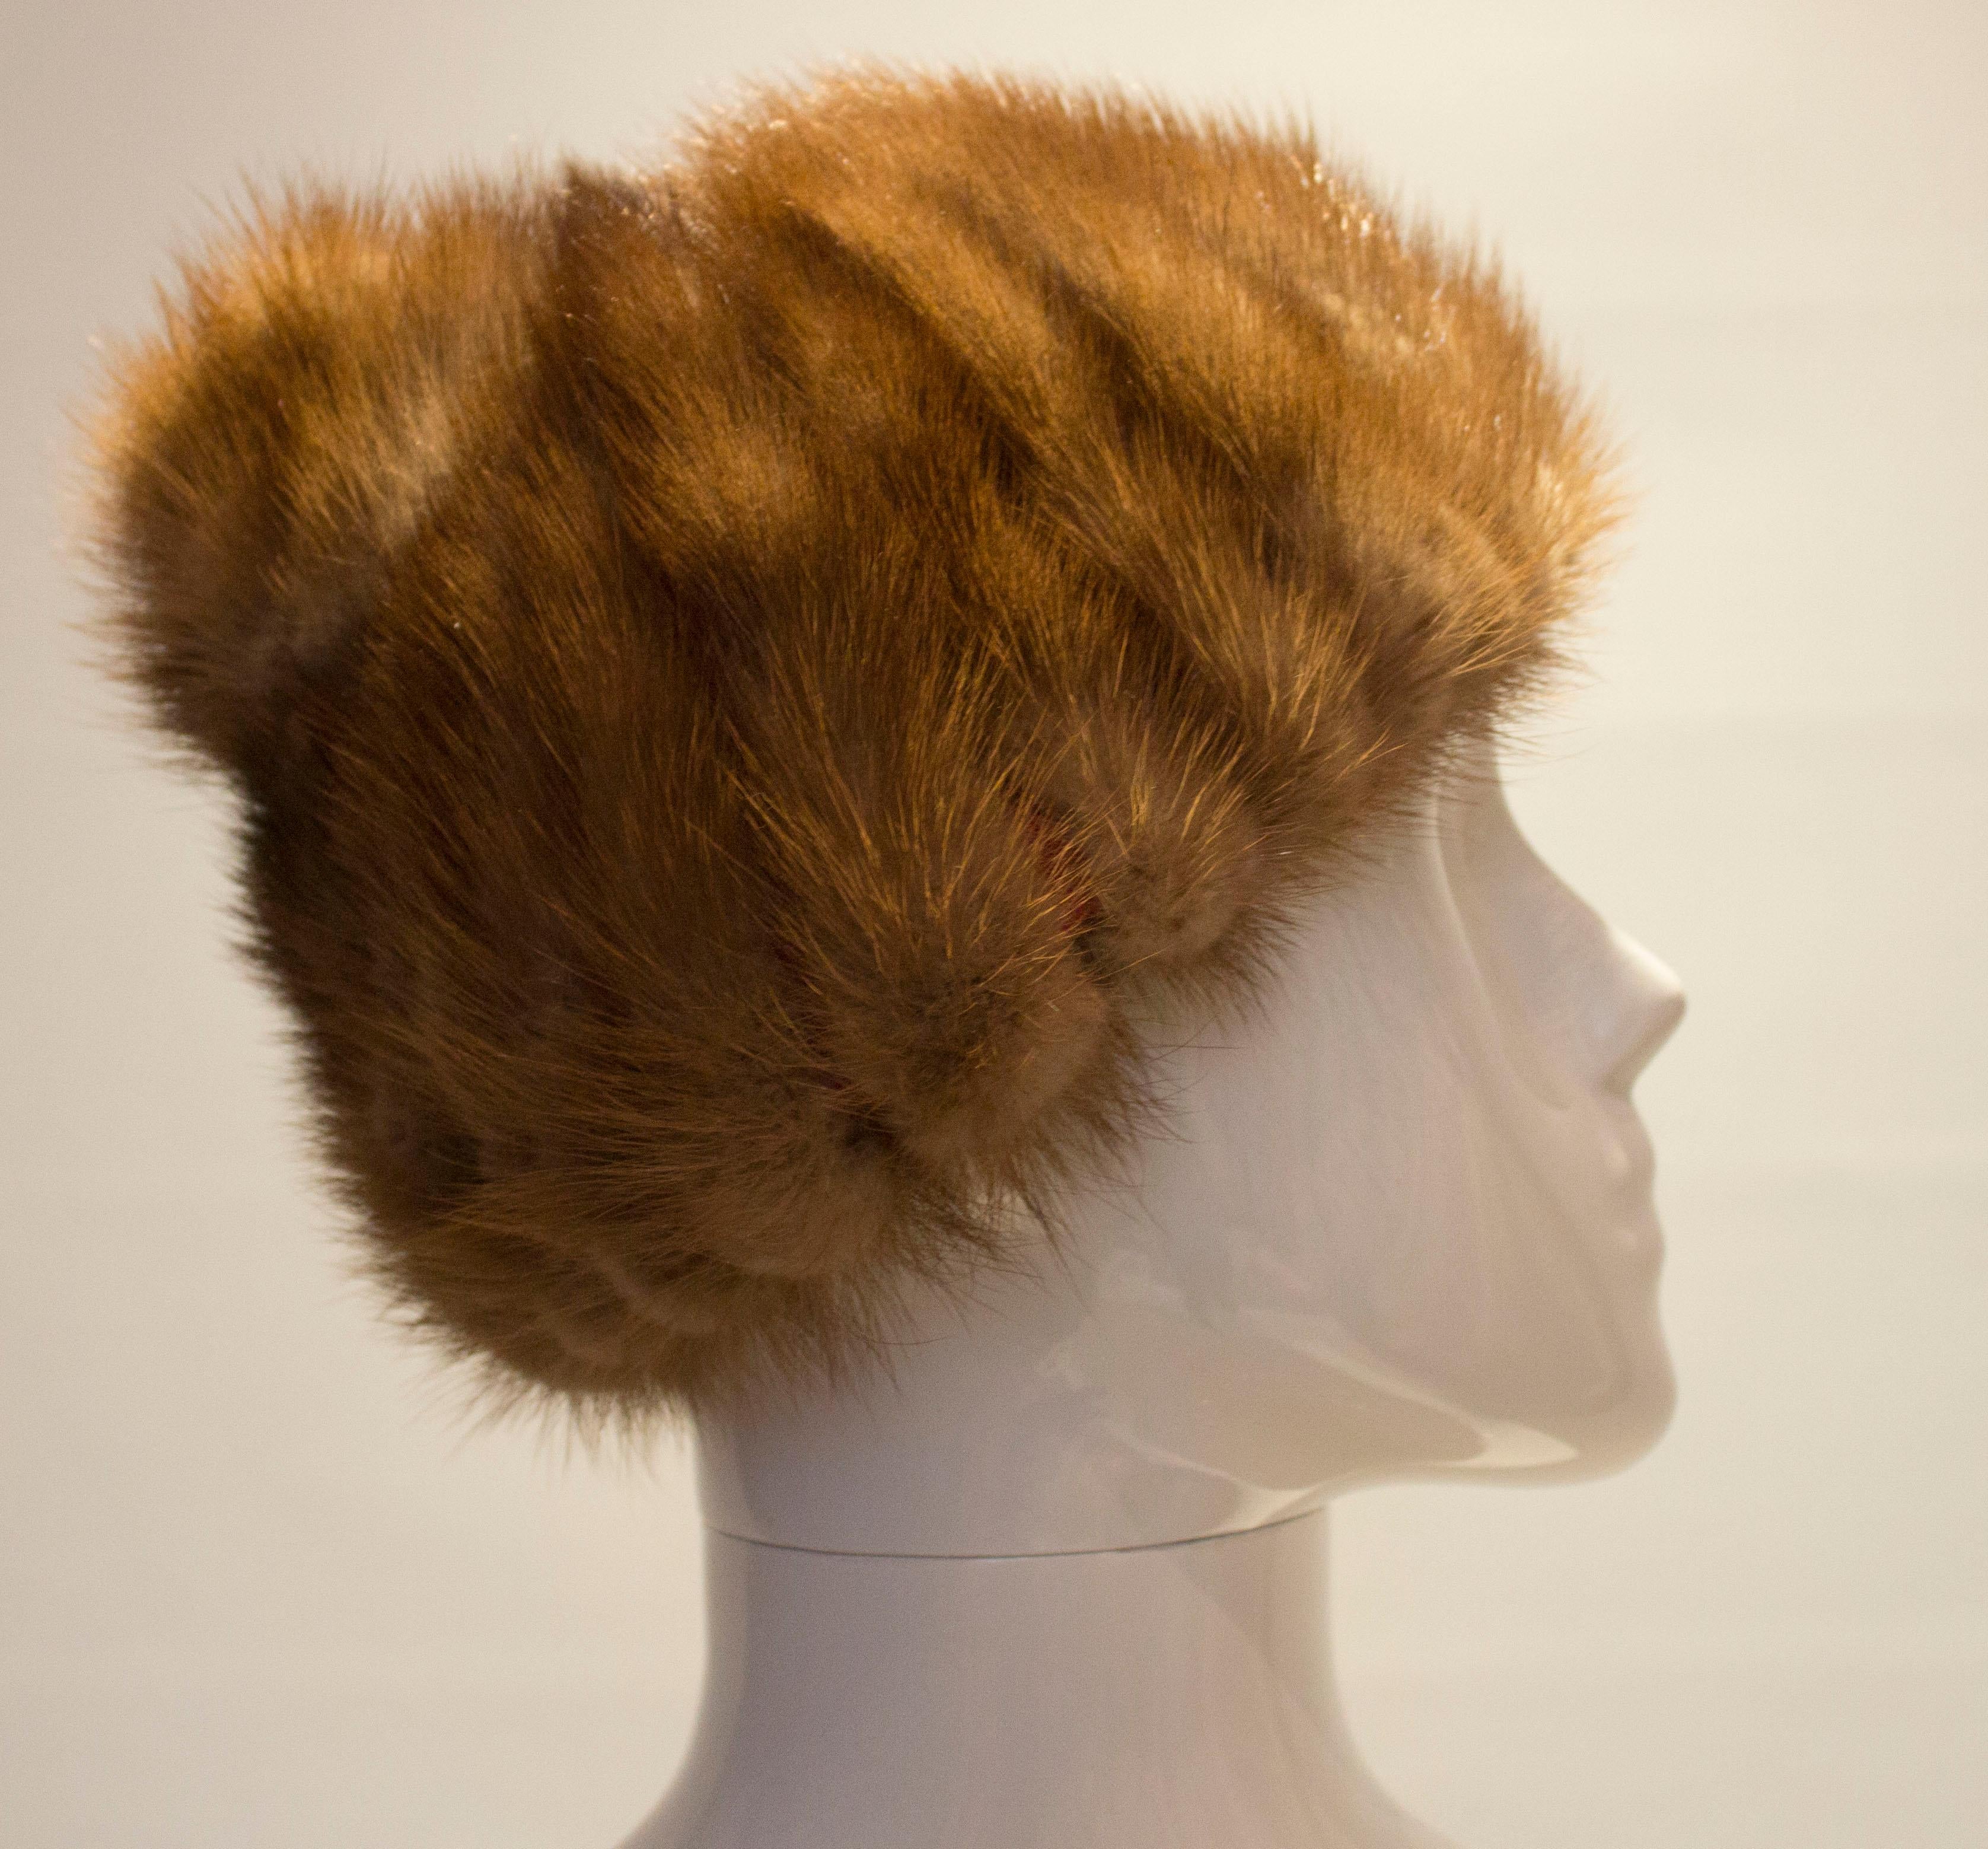 Un bonnet de vison mignon et chaud, idéal pour le temps froid. D'une belle couleur marron clair, le chapeau a une circonférence intérieure de 22''.